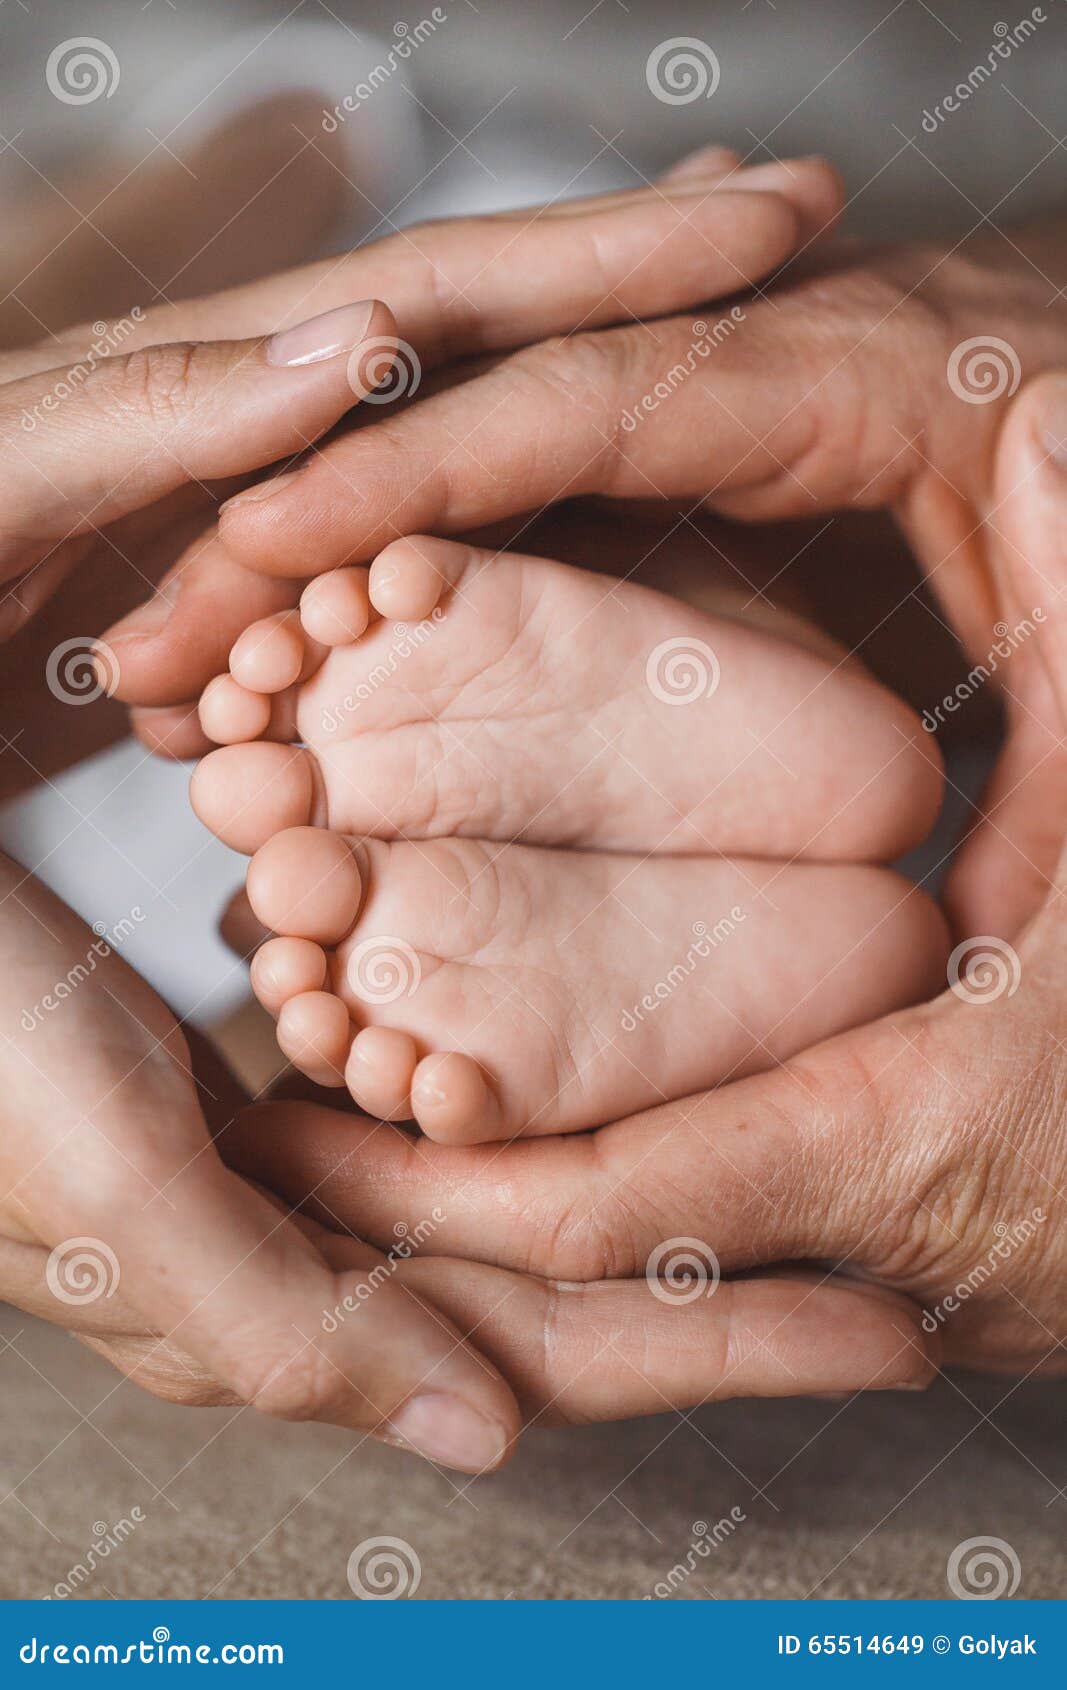 Children S Feet In Hands Of M